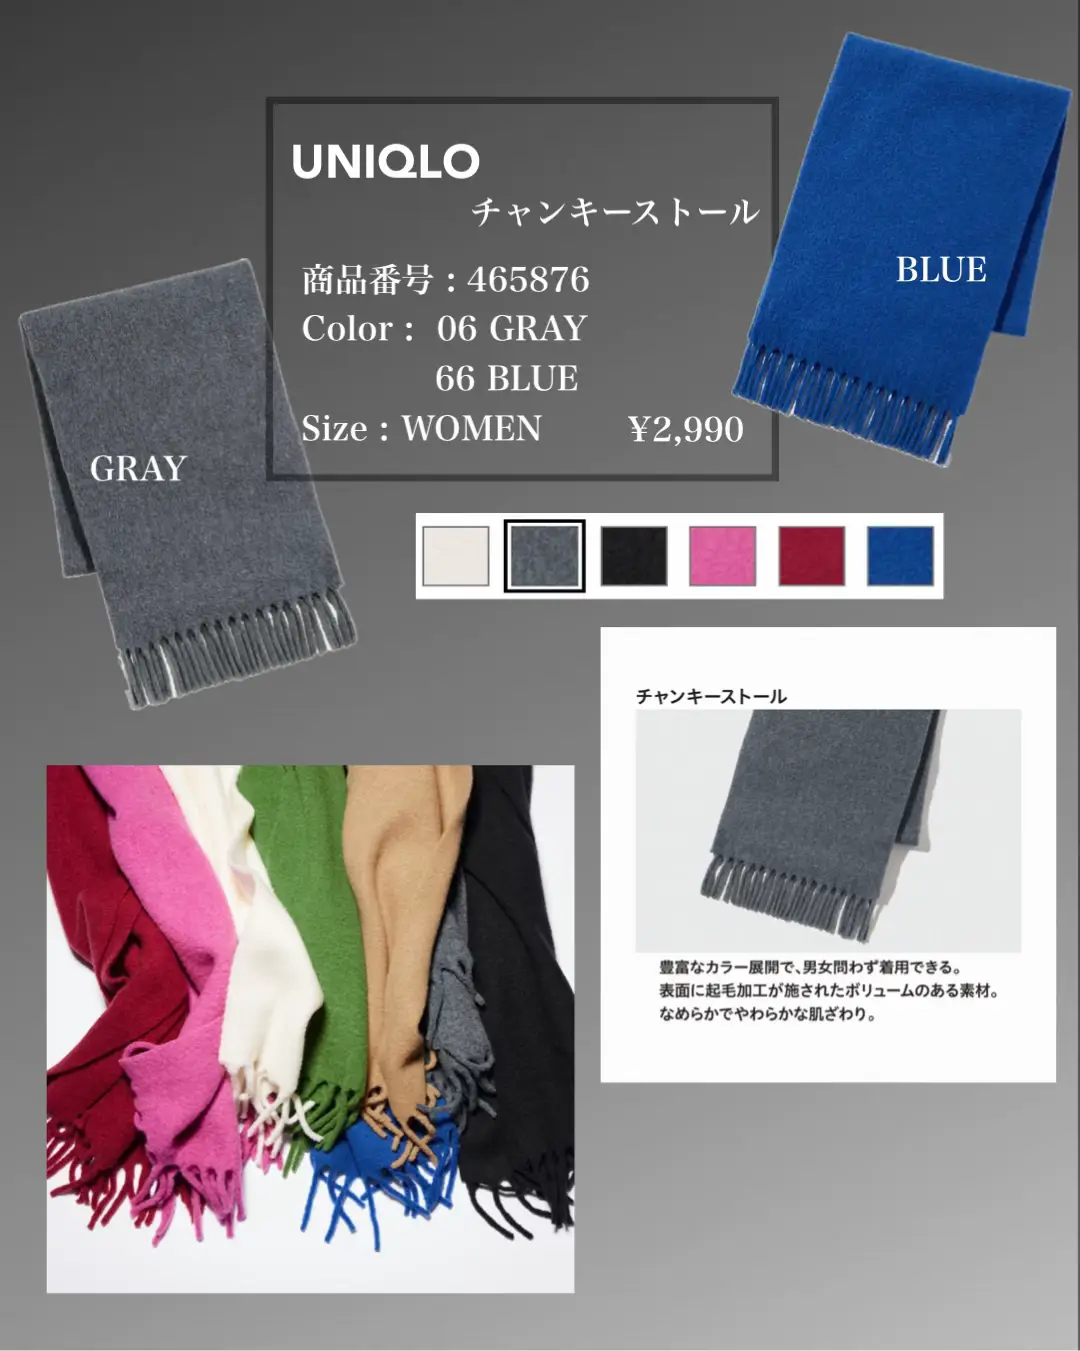 UNIQLO 】 激推しのストール🧣と手袋🧤使えるグレー  と挑戦カラーの